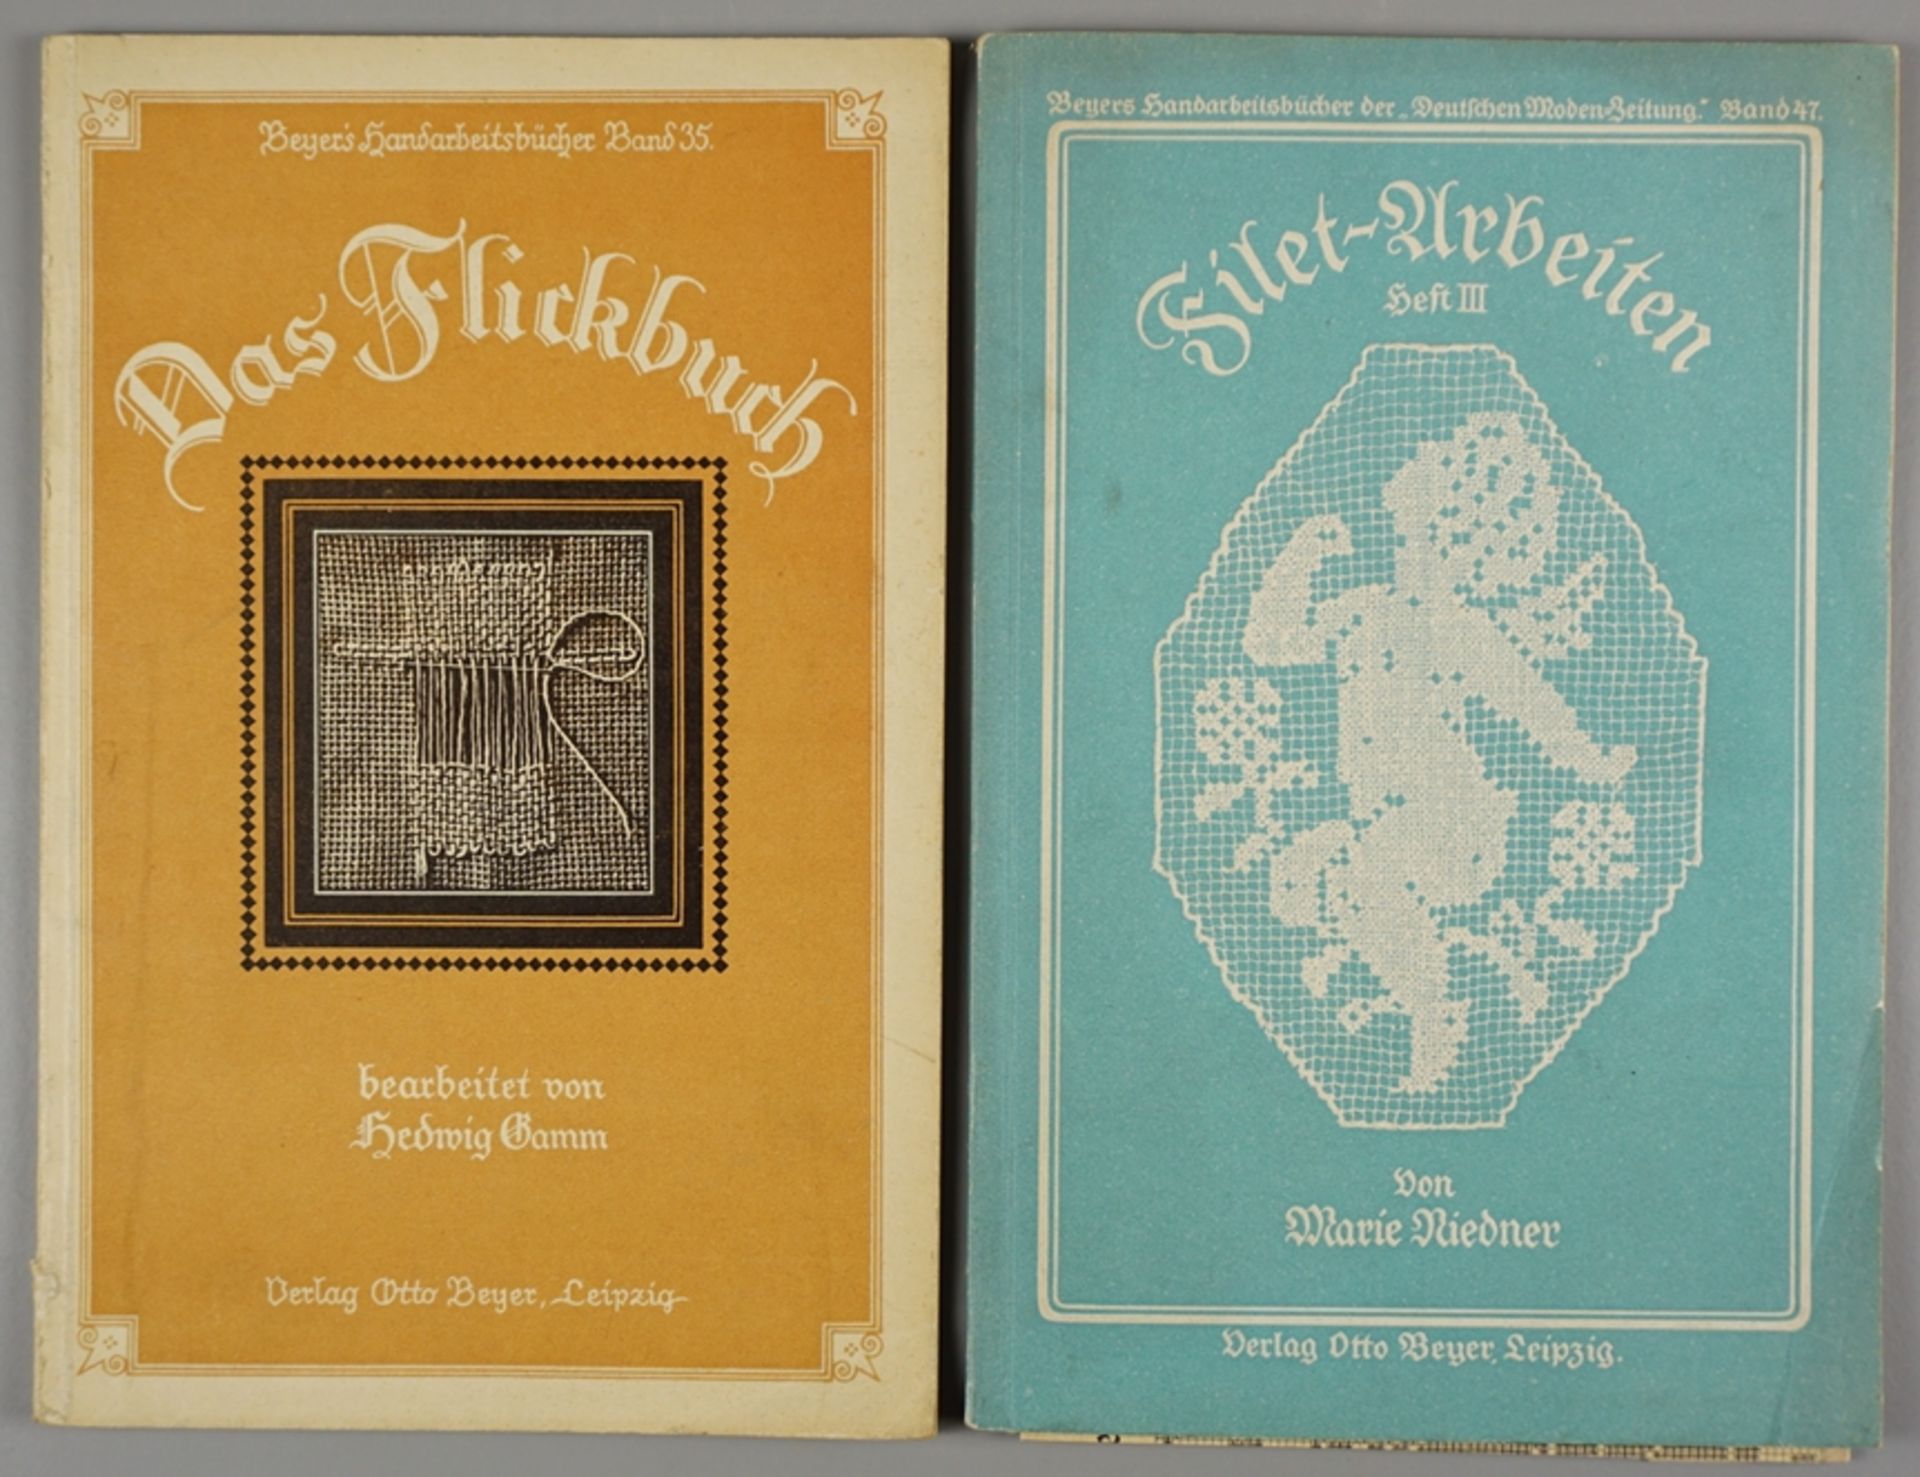 2 Hefte "Beyers Handarbeitsbücher", Bde. 35 und 47, Verlag Otto Beyer, Leipzig